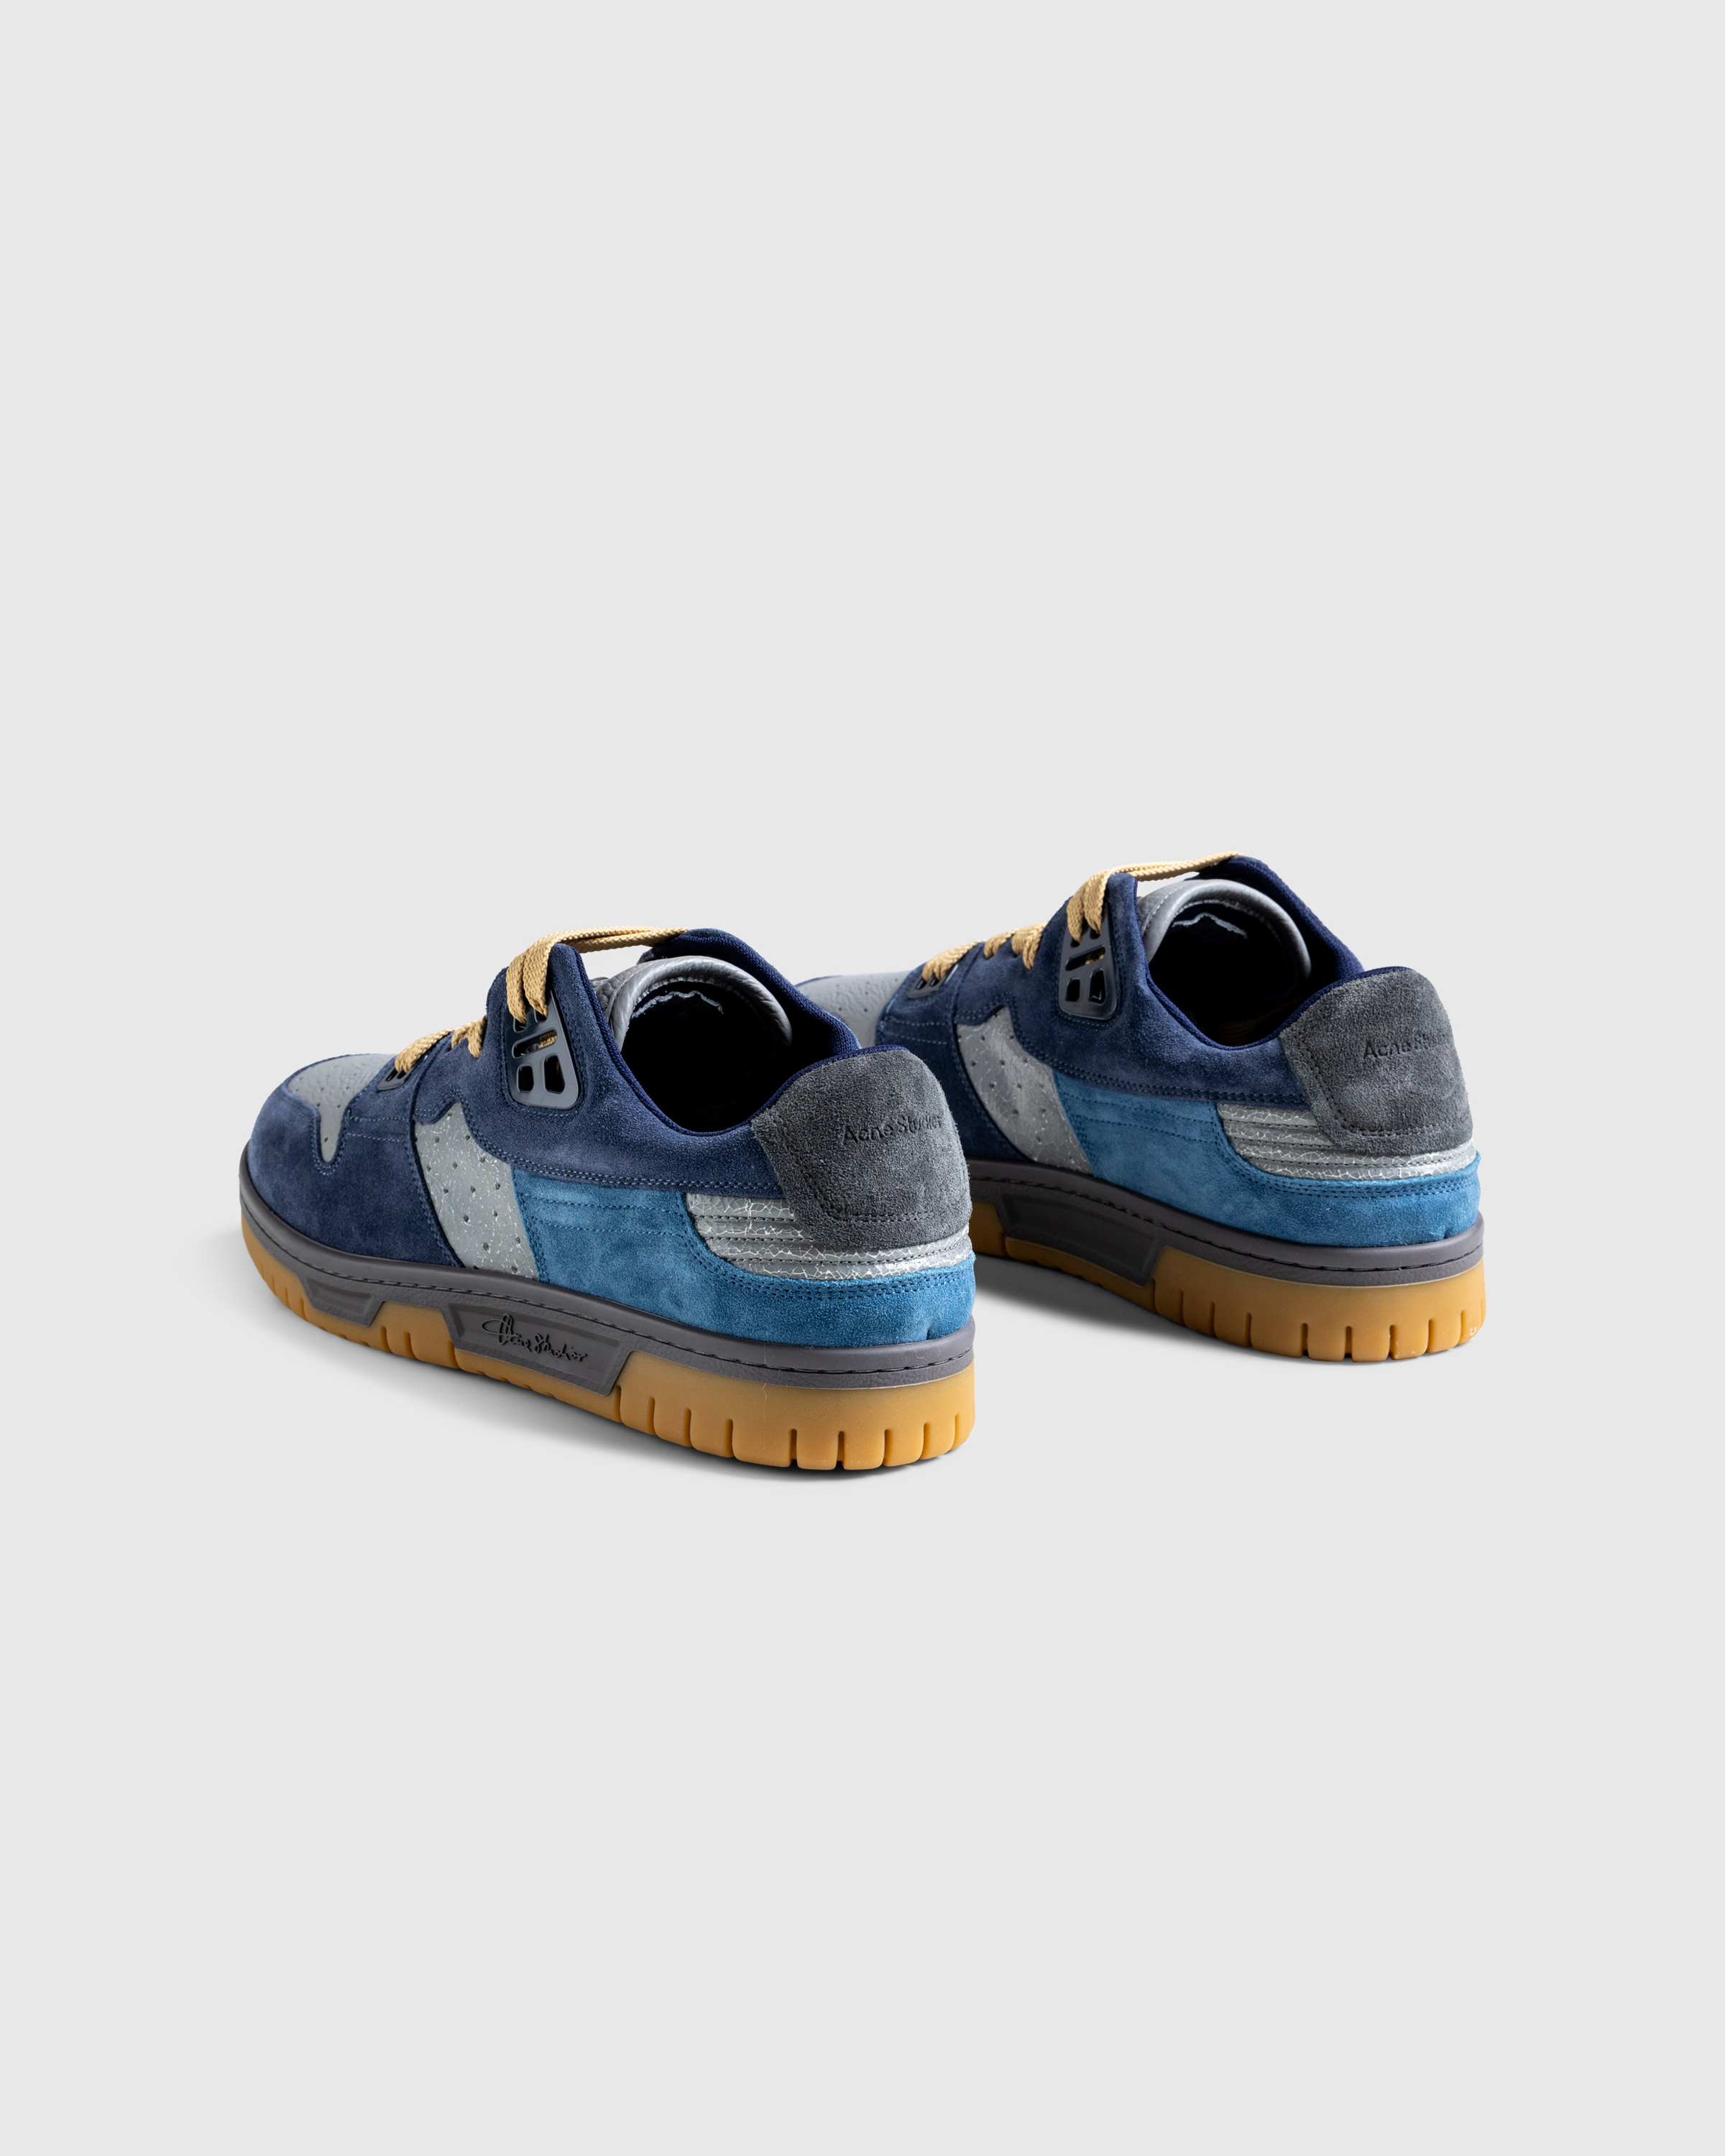 Acne Studios – Low-Top Sneakers Grey Blue - Sneakers - Blue - Image 4